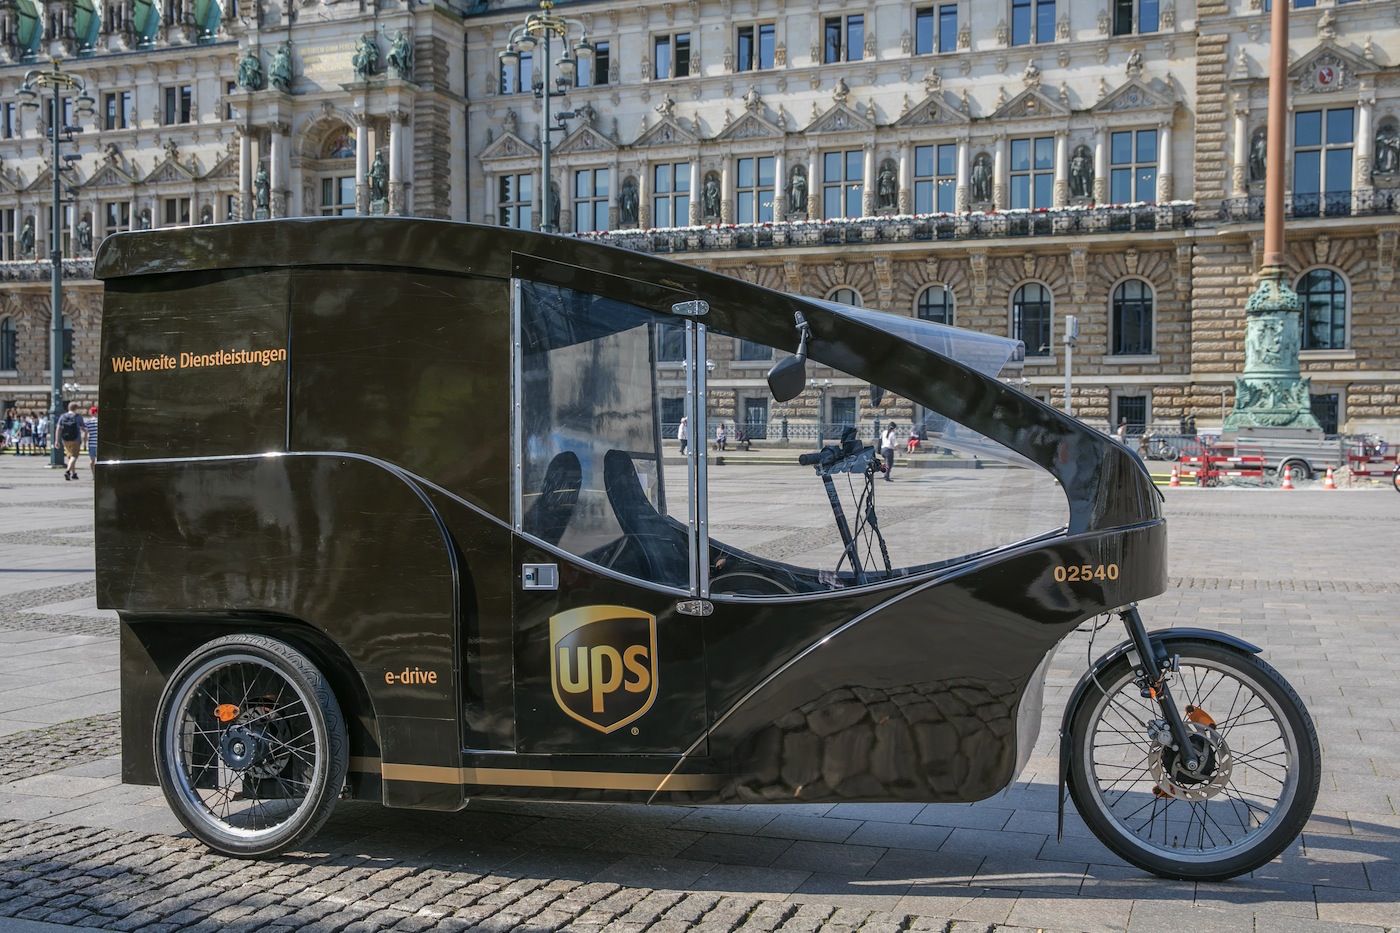 Vehiculo sostenible de UPS